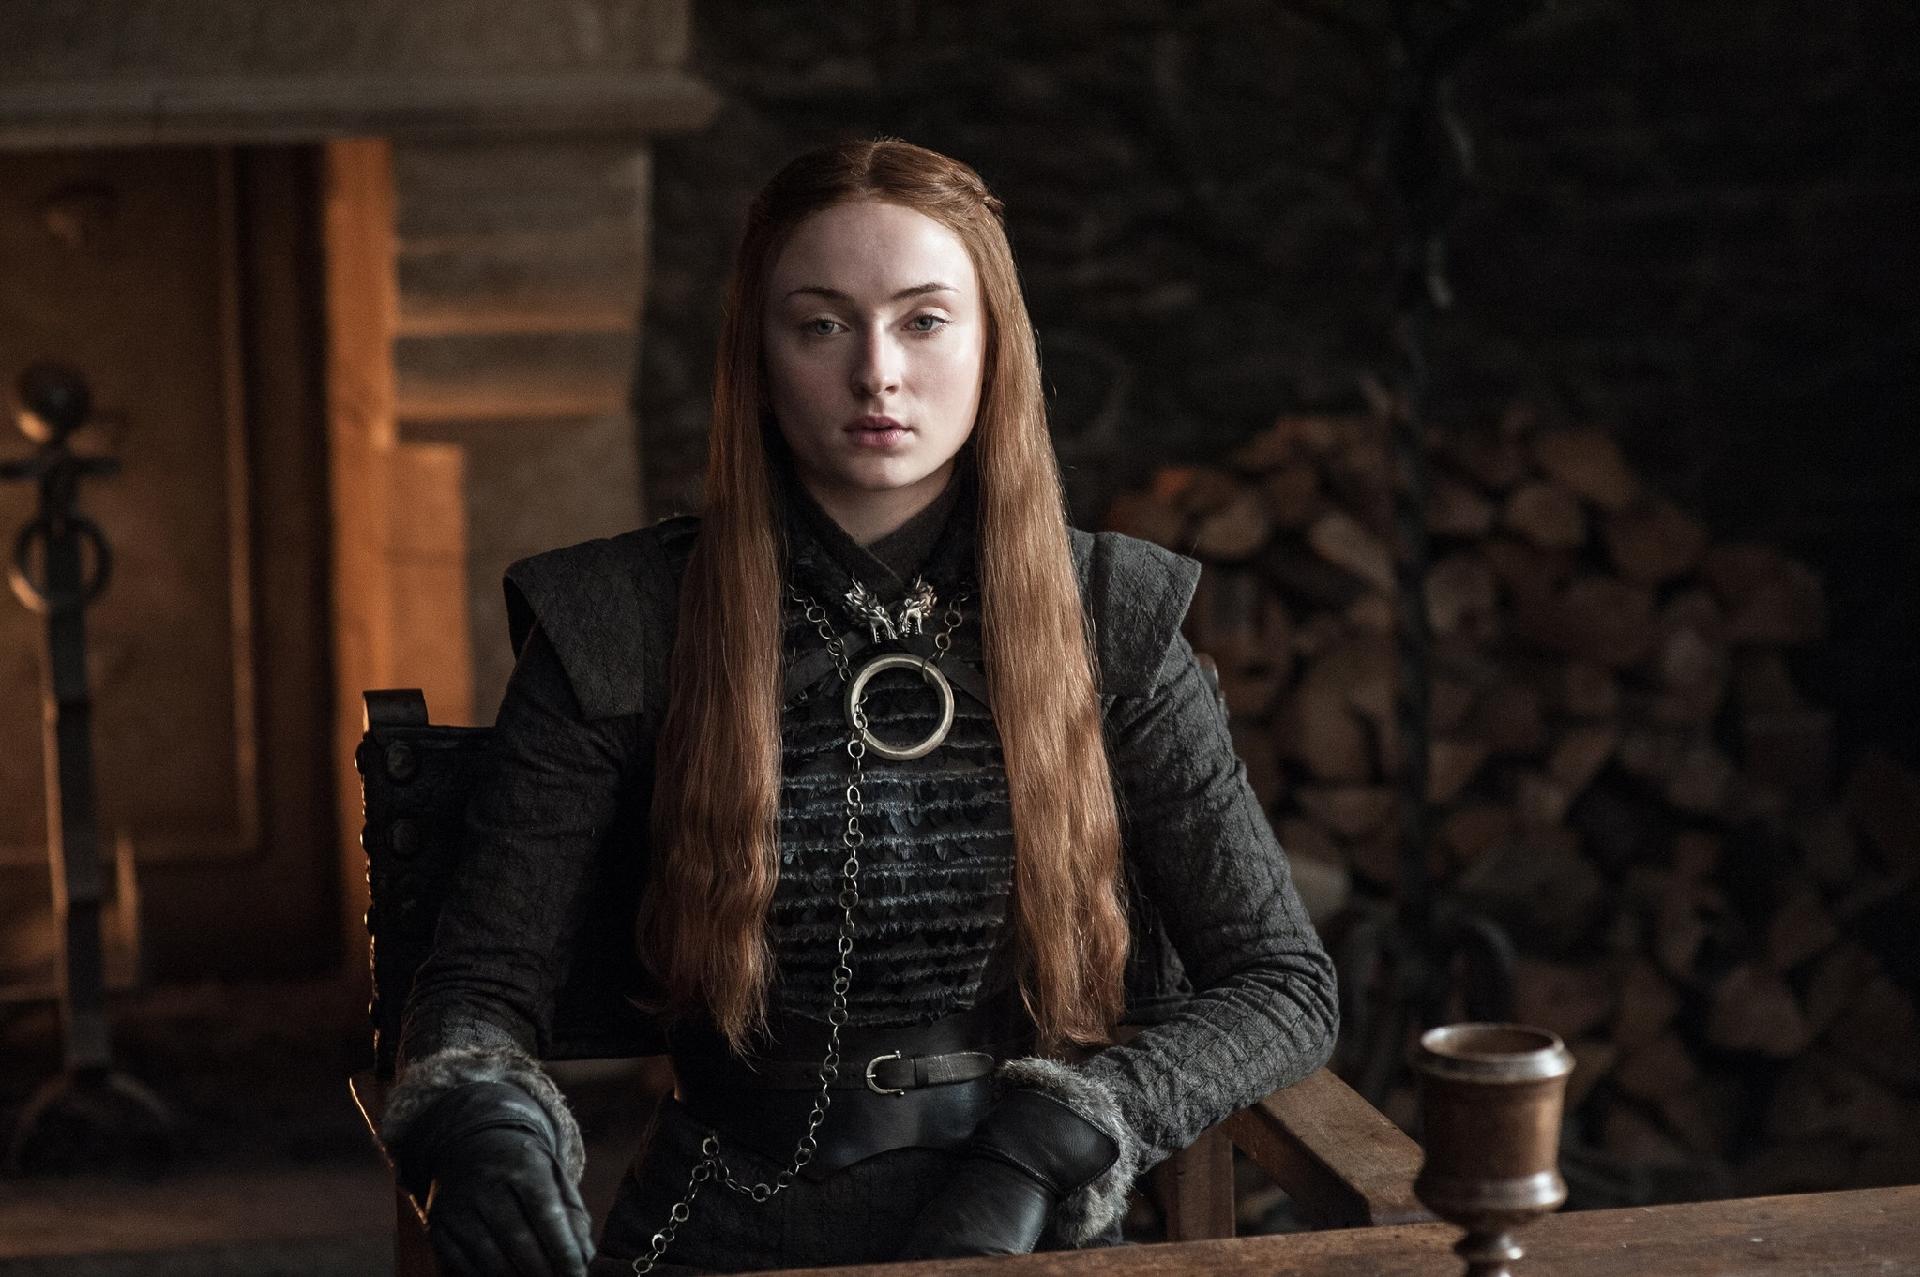 Game of Thrones | Arte coloca a Fênix Negra de Sophie Turner no Trono de Ferro